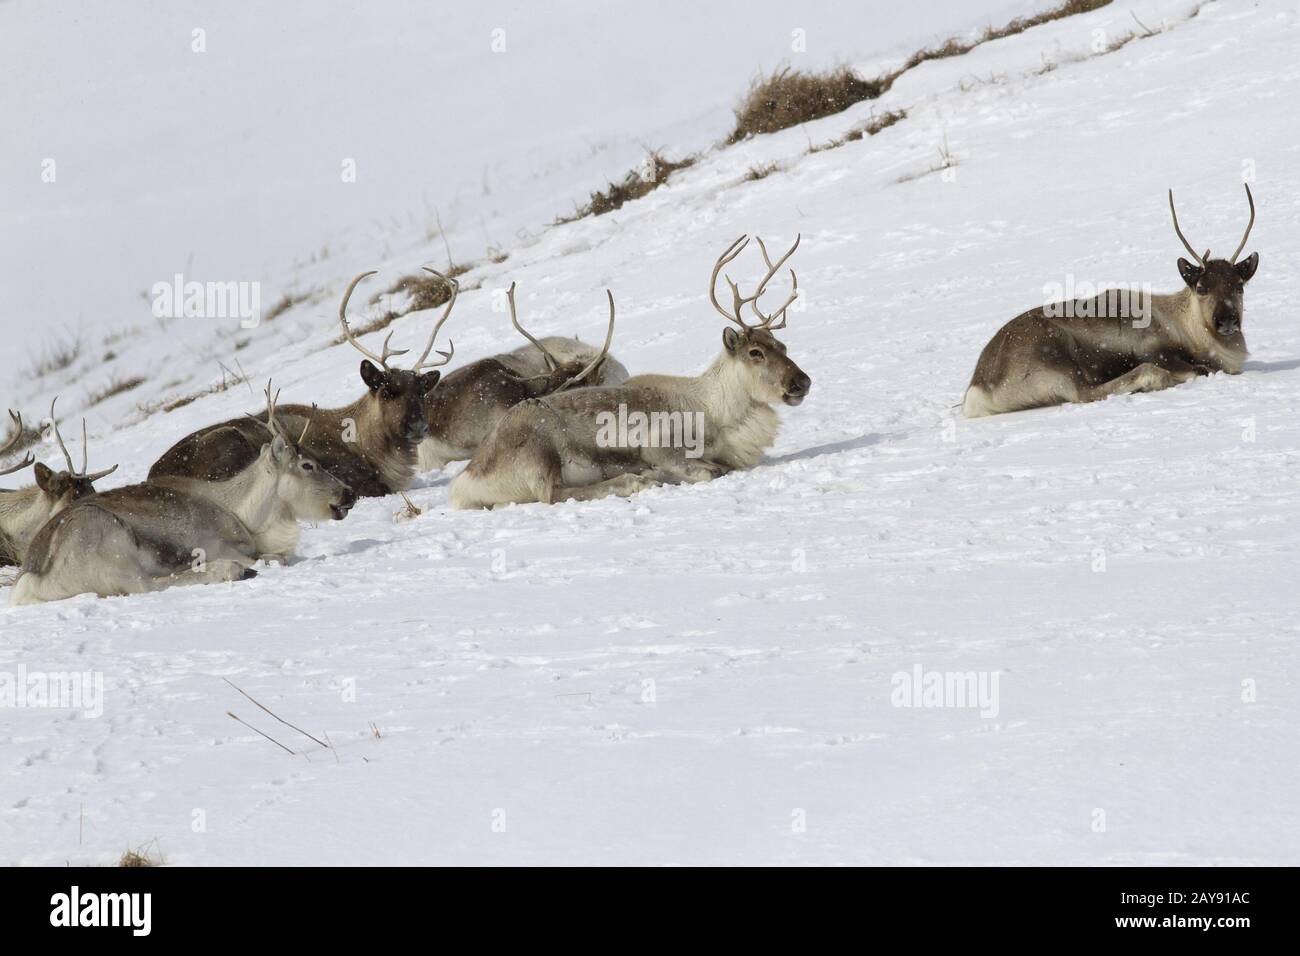 Le renne couché sur la pente d'une colline couverte de neige dans la toundra, sur une journée d'hiver Banque D'Images